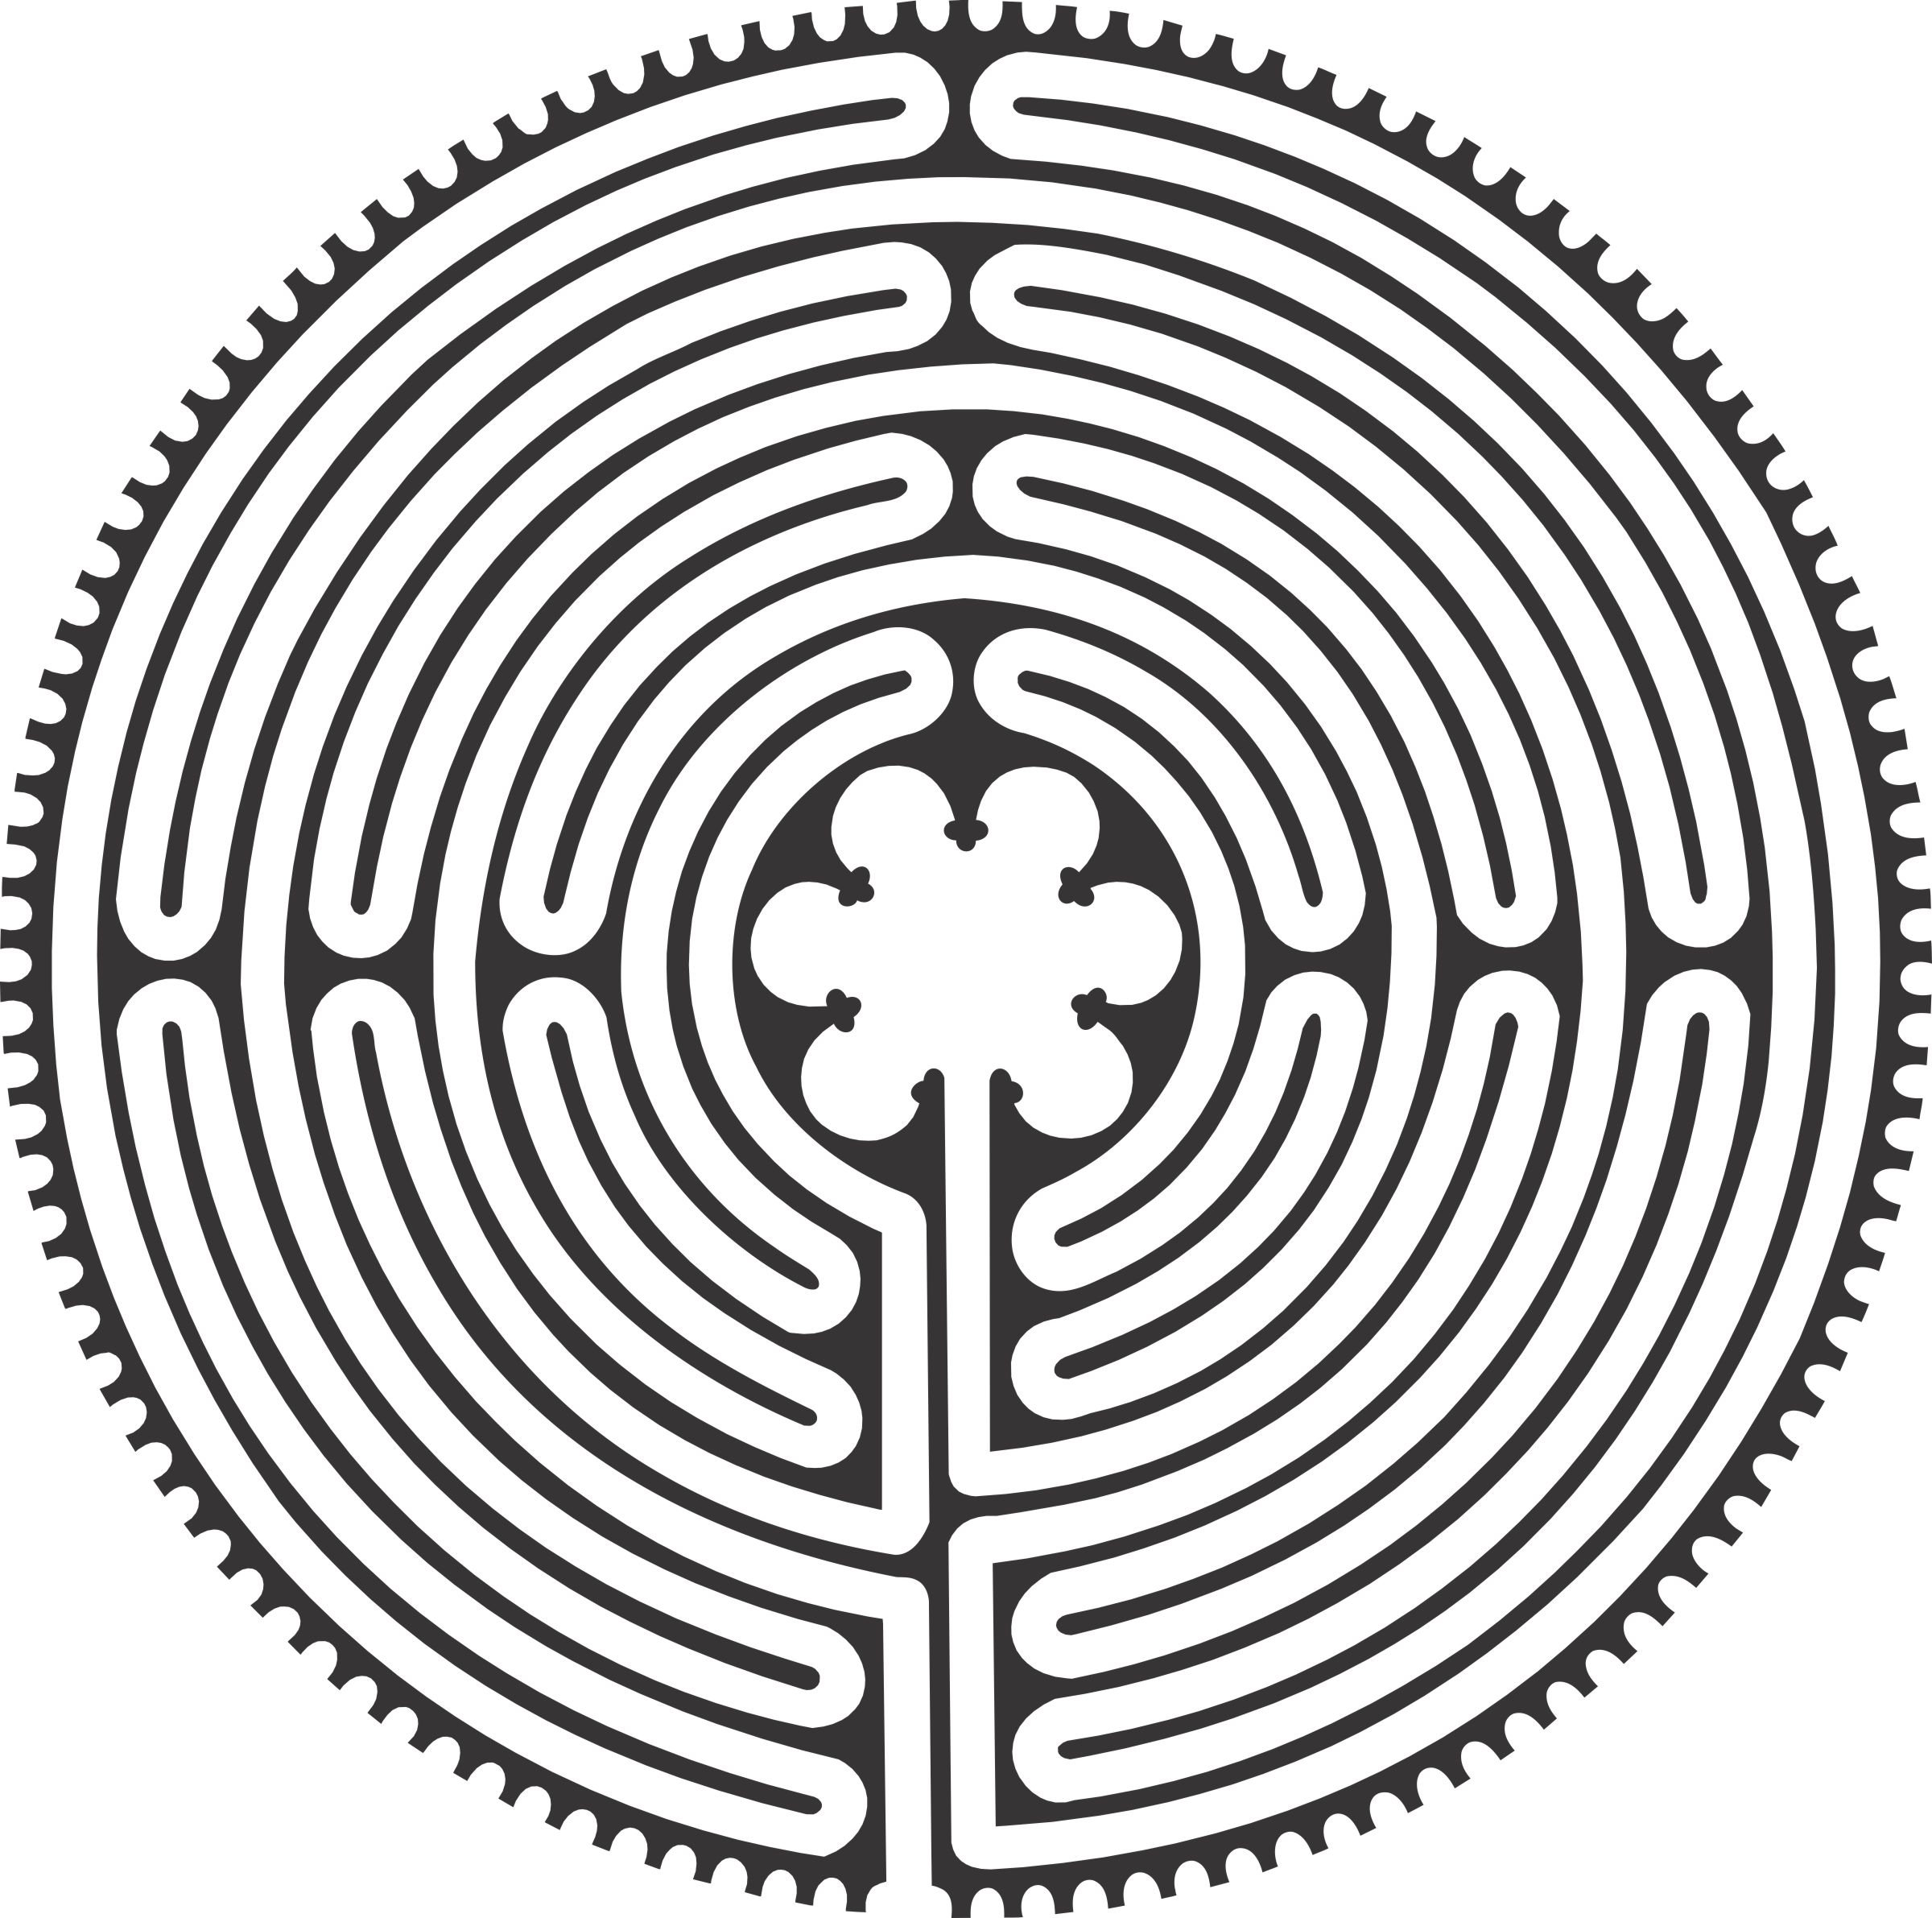 Chartres Labyrinth Images - KibrisPDR